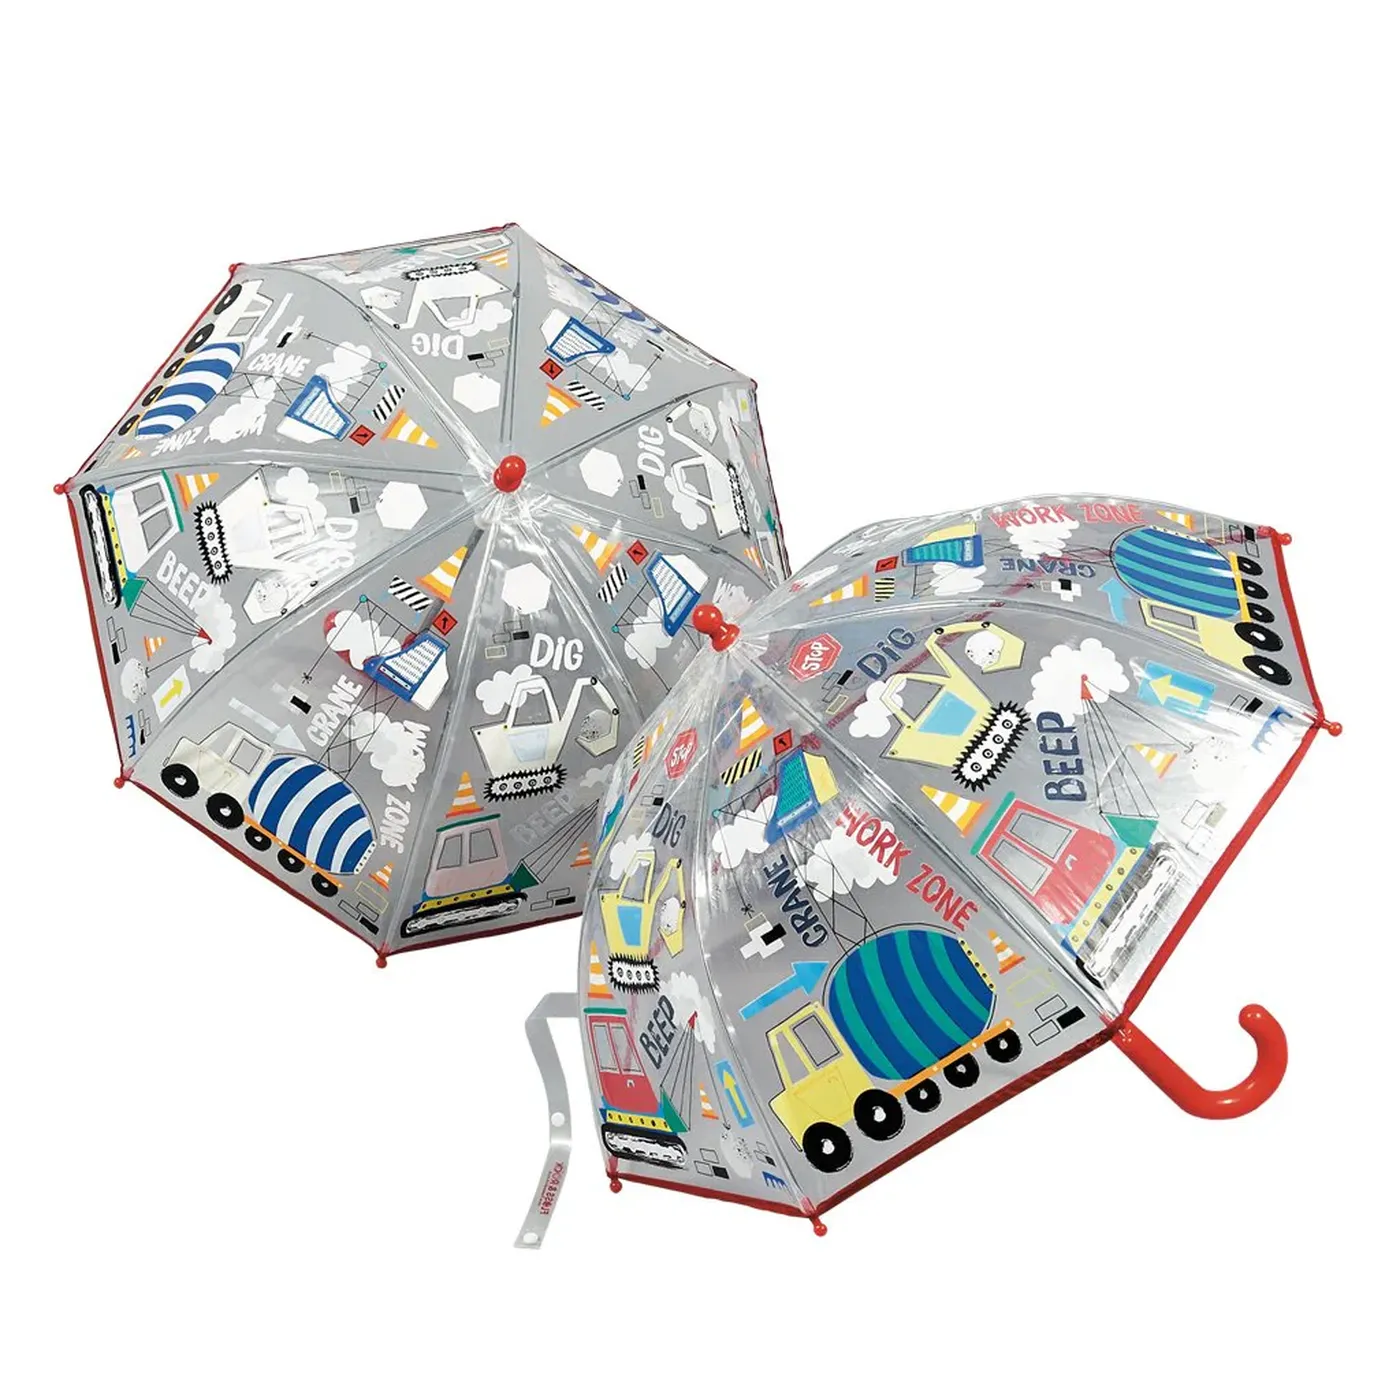 Umbrela transparenta pentru copii, in culori schimbatoare Construction, 3 ani+, Floss & Rock